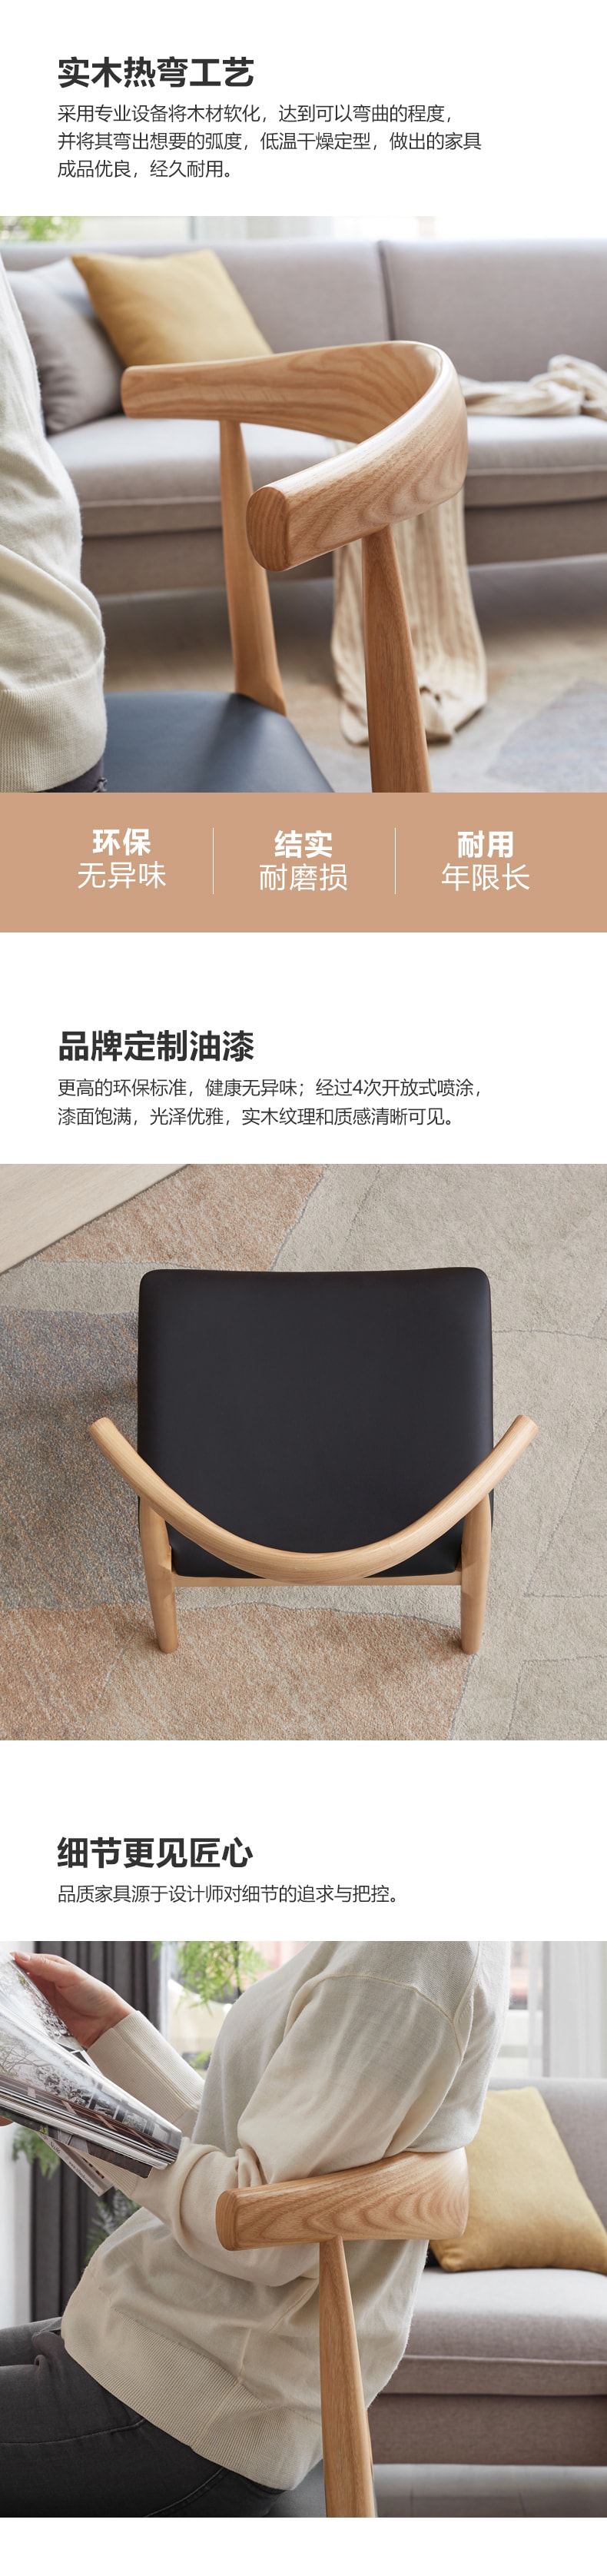 源氏木语 牛角椅 0.5米 PU (棕黄) 2pcs 【中国实木家具第一品牌】